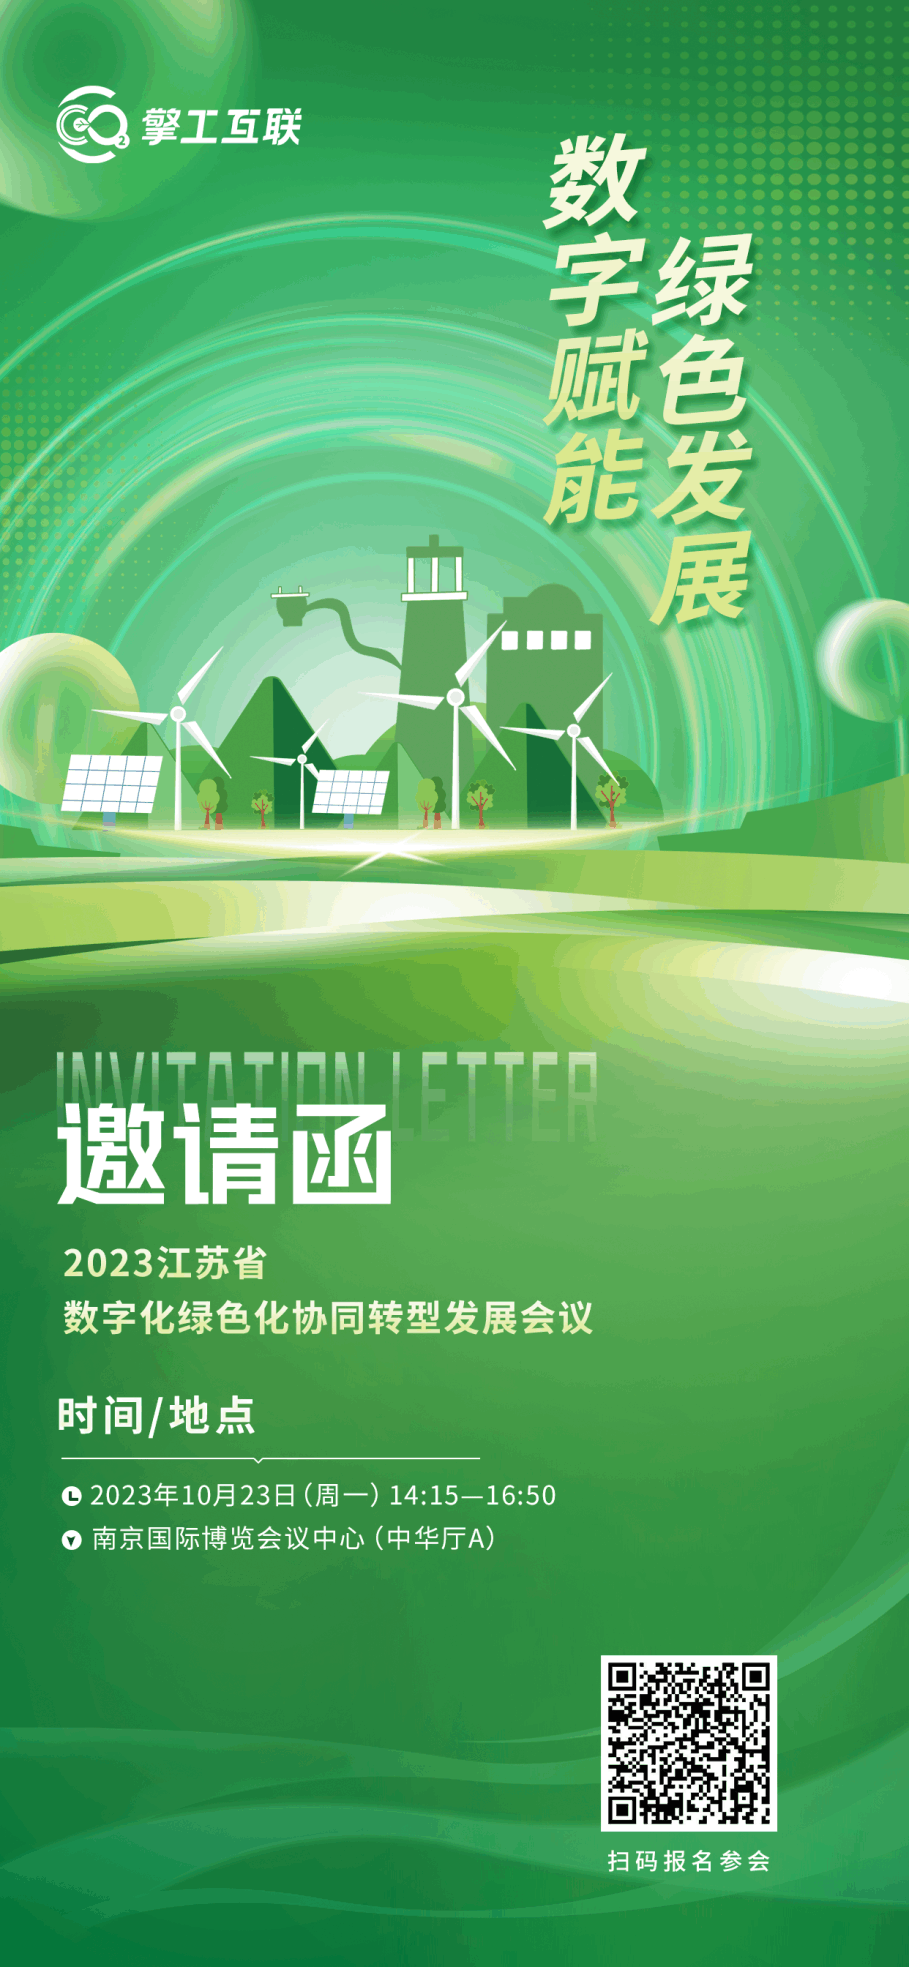 擎工互联邀您参加2023江苏省数字化绿色化协同转型发展会议